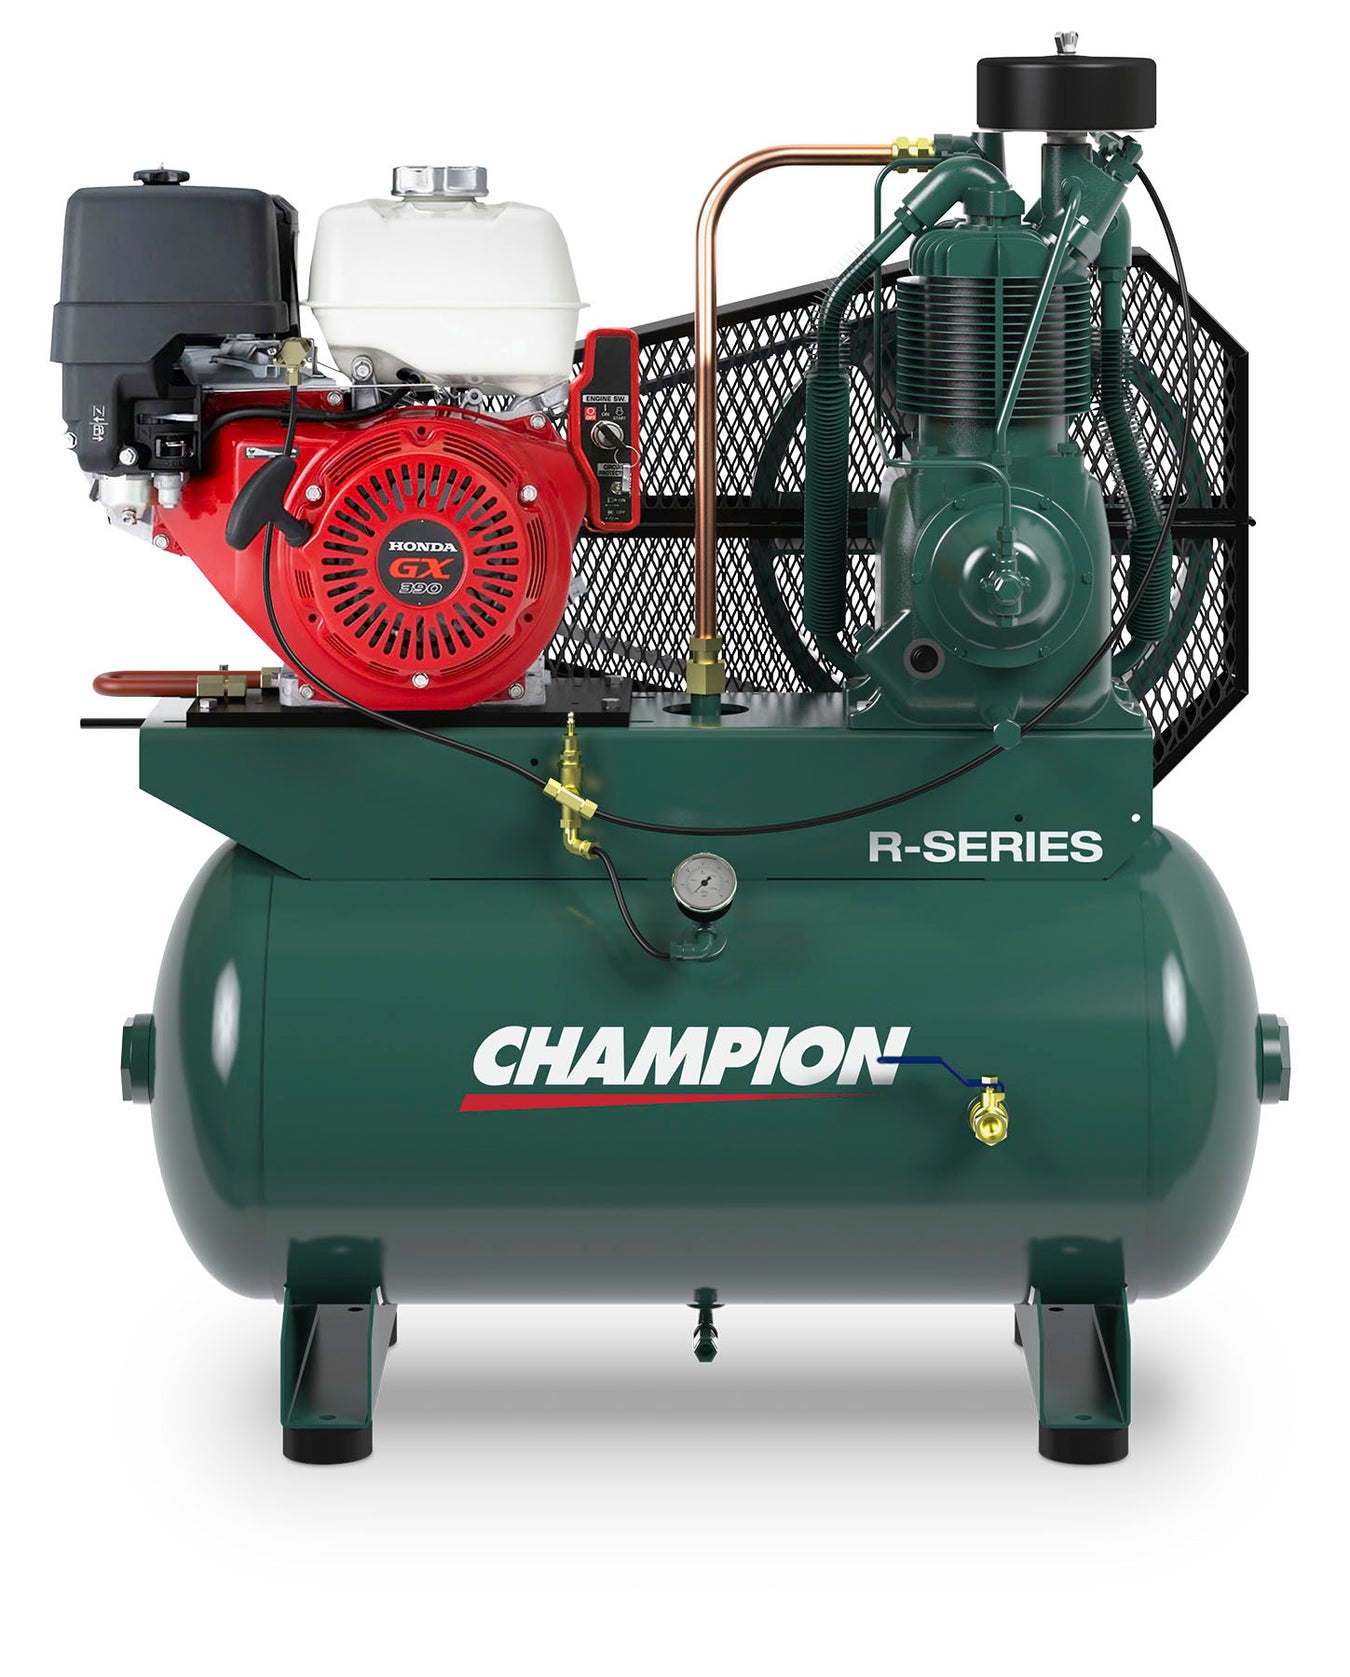 Champion HGR7-3H - 13hp Honda Gas Engine Air Compressor, 30 Gallon Air Receiver, 23.2 CFM @ 175 PSI